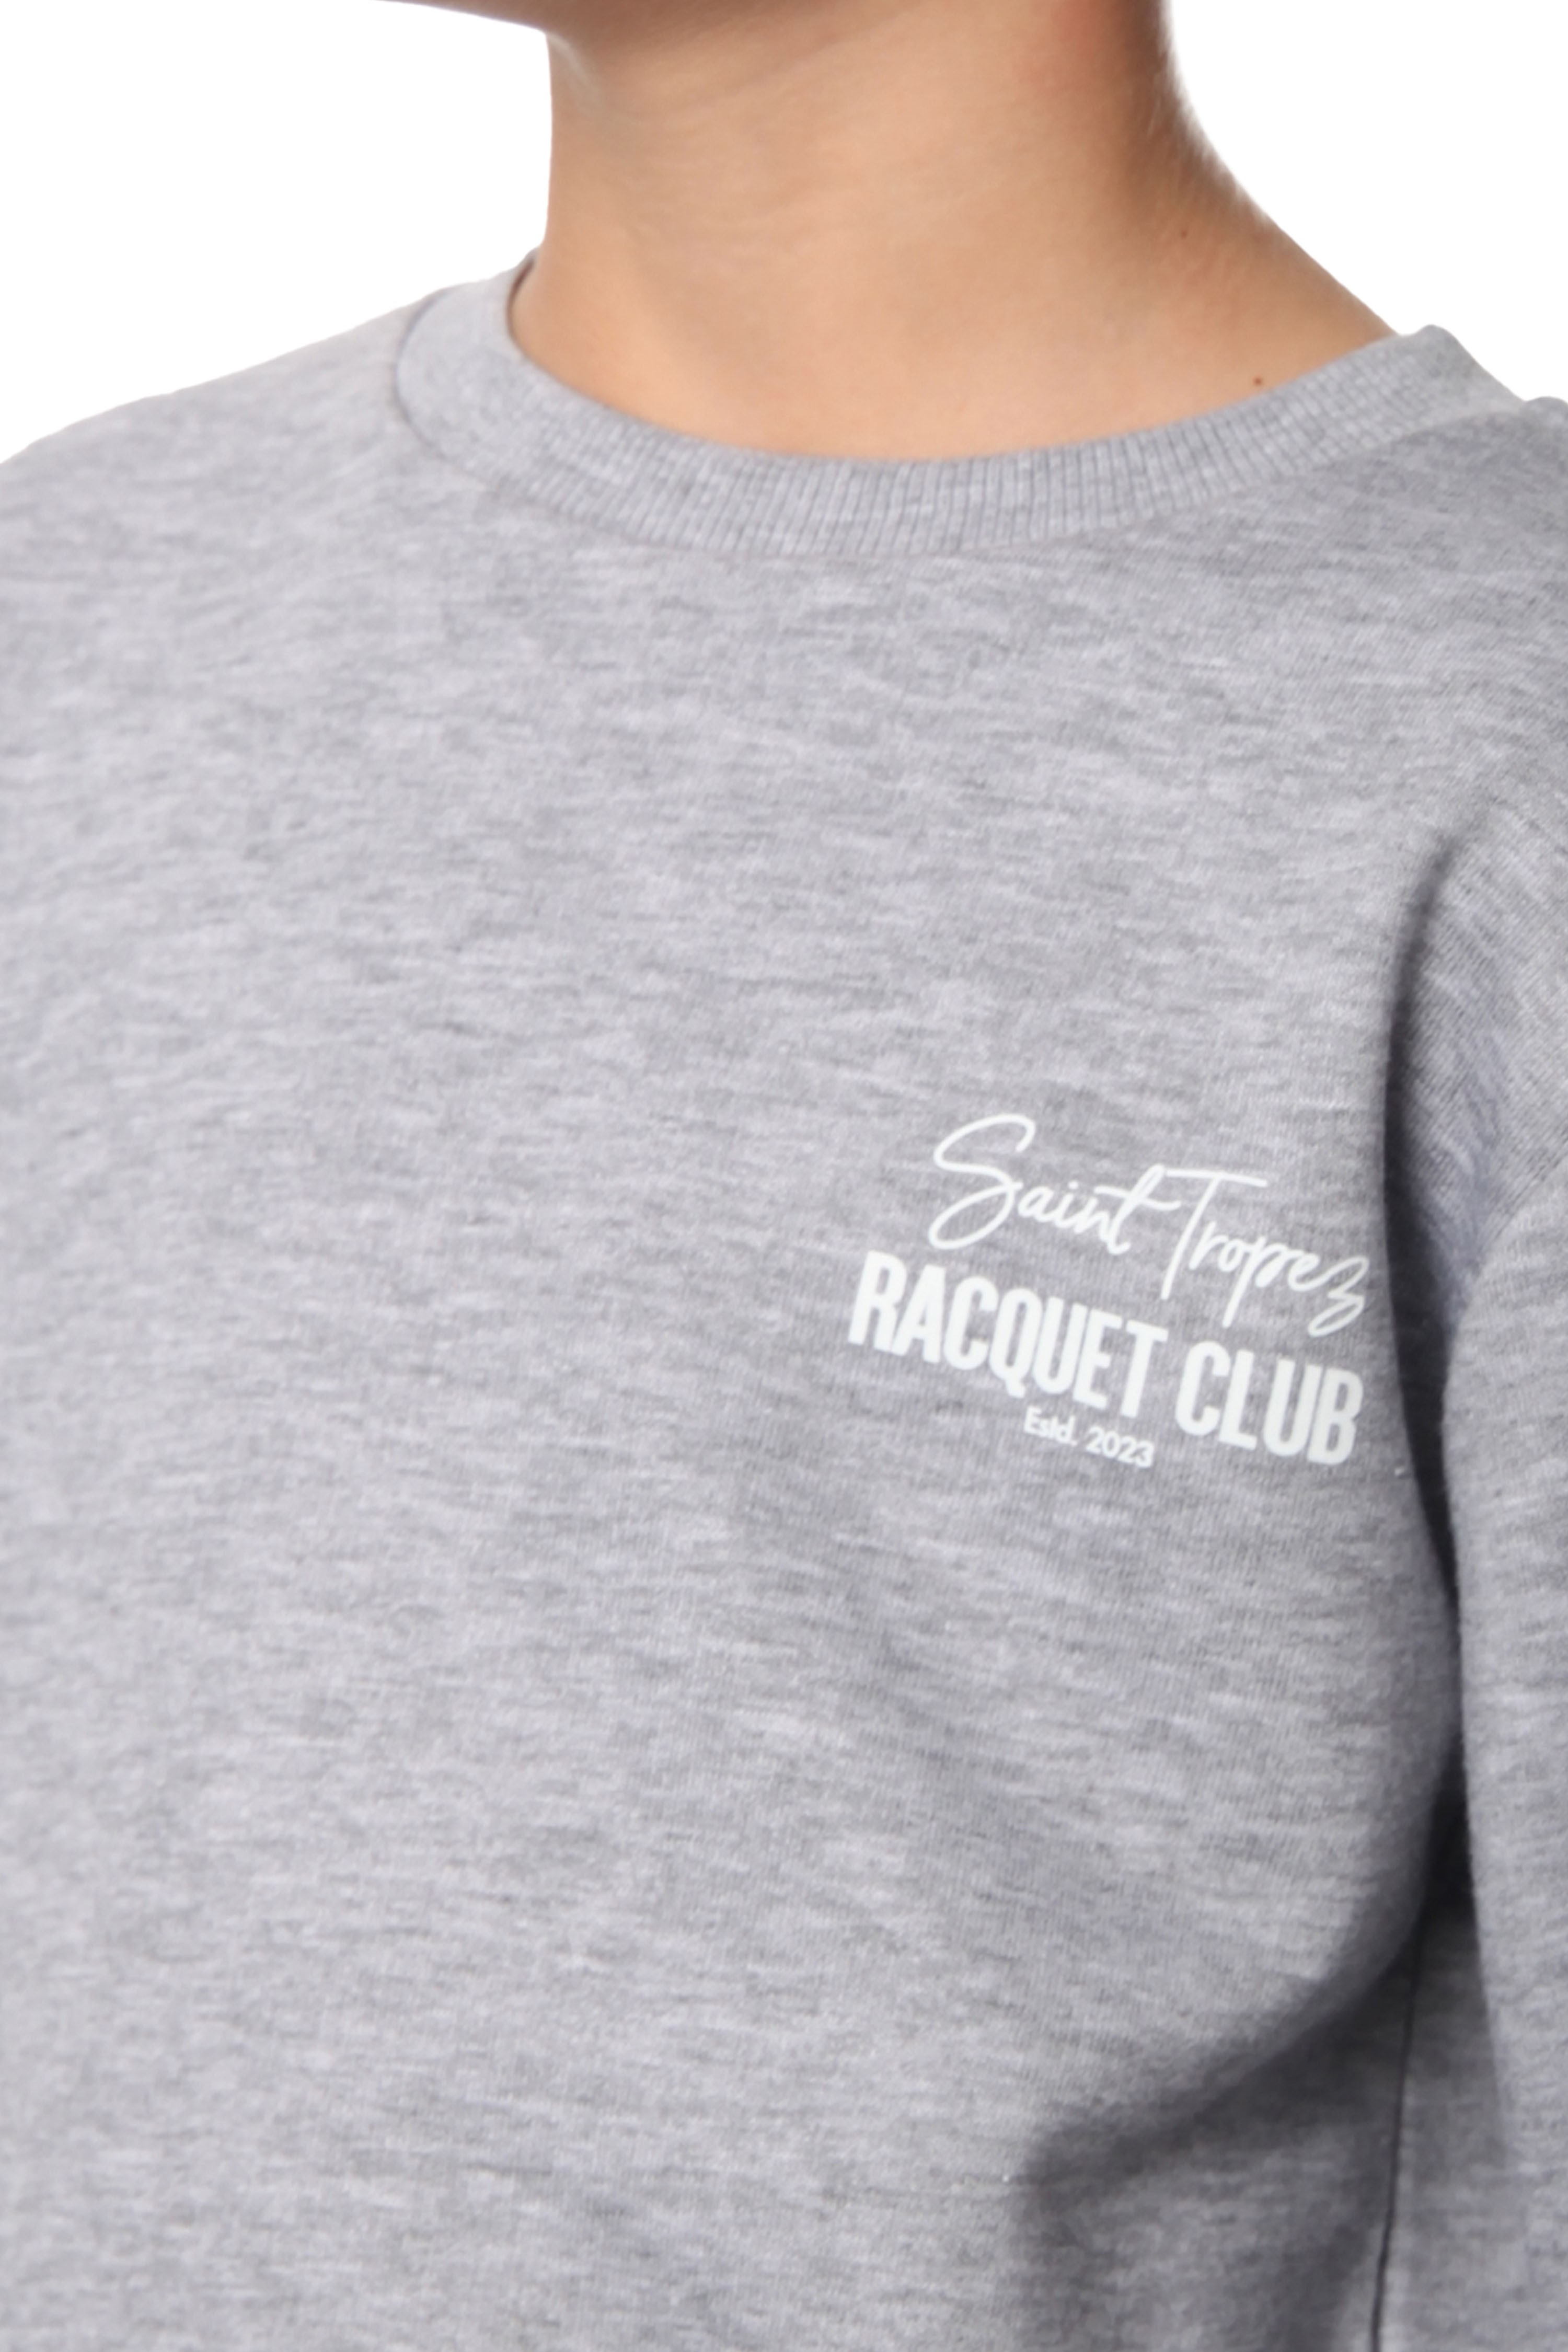 Racquet Club Sweatshirt Çocuk Erkek - Gri